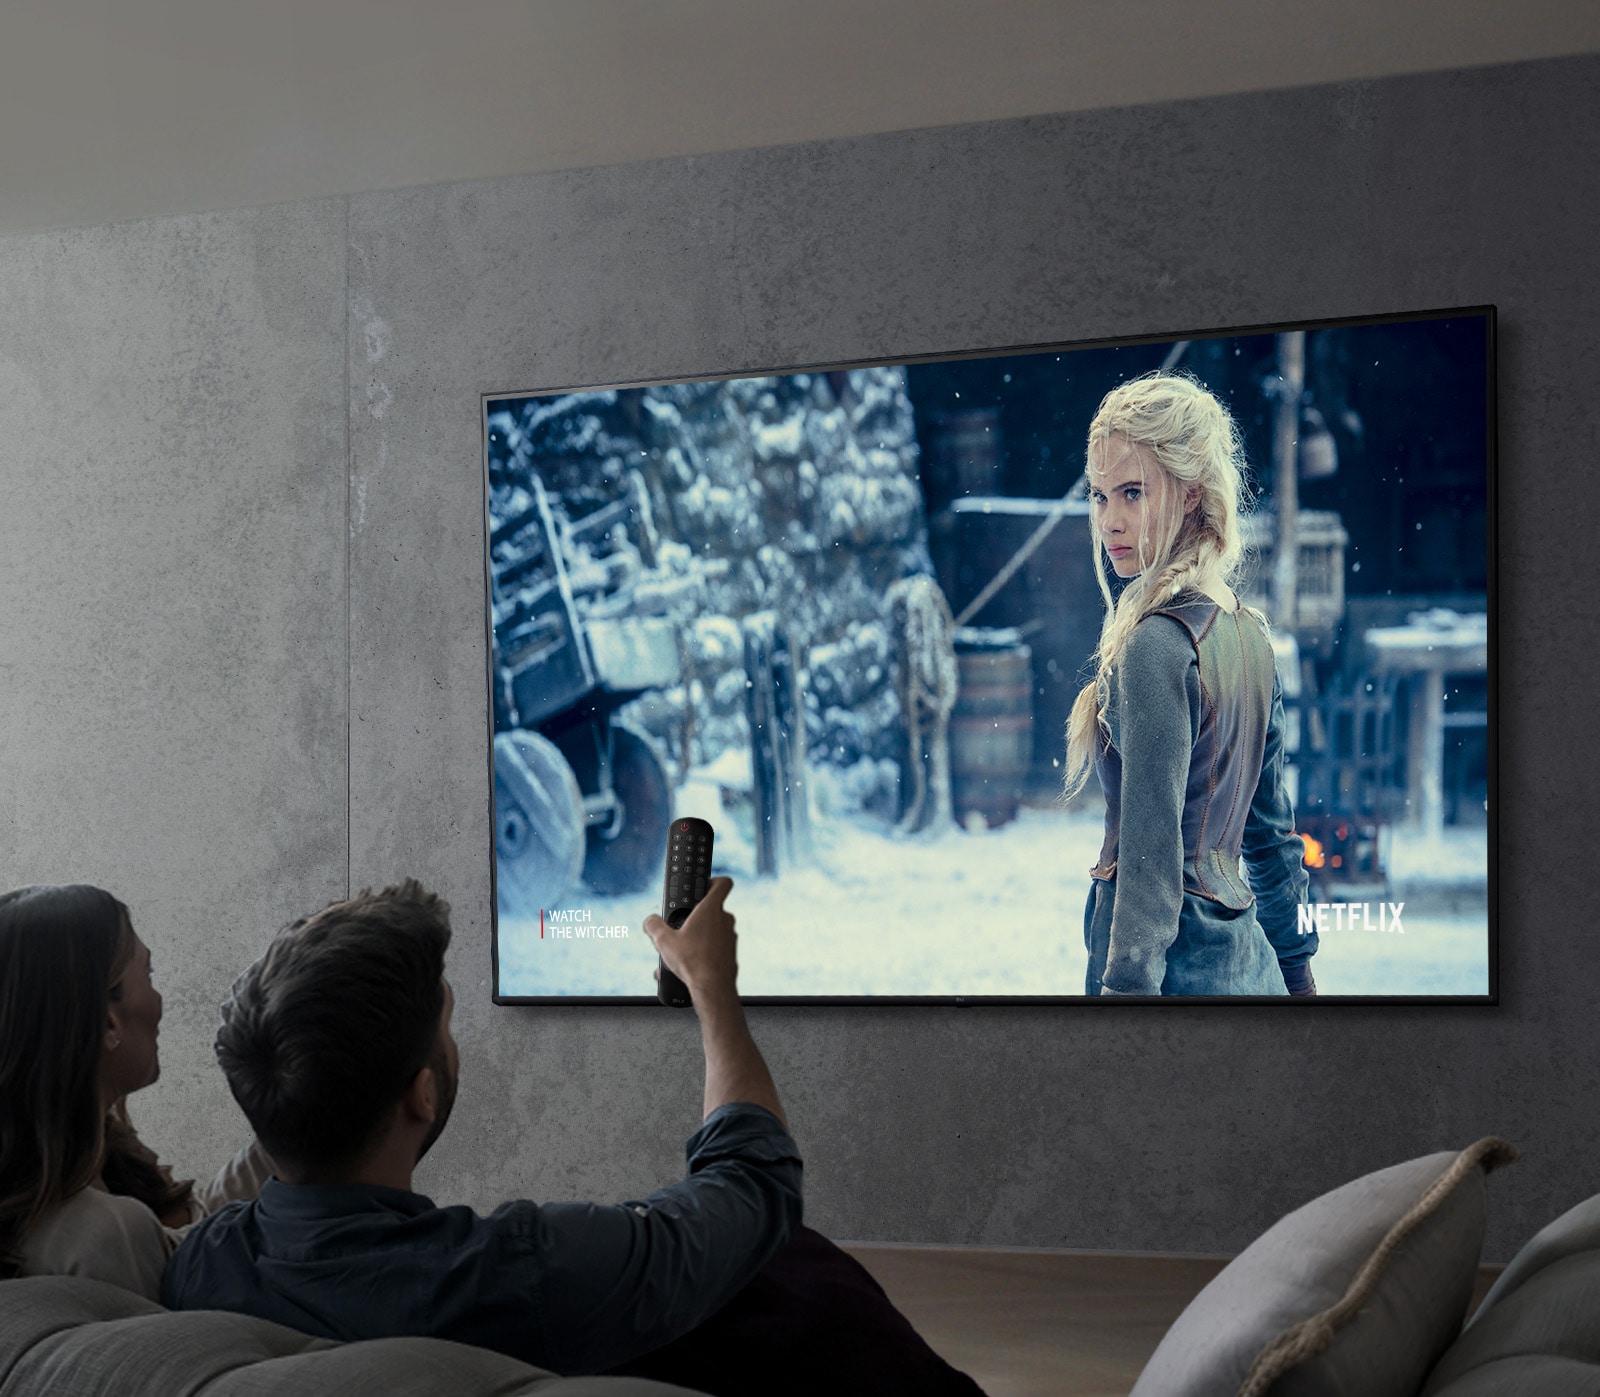 Hình ảnh cho thấy một cặp vợ chồng đang xem một chương trình bằng TV LG UHD.